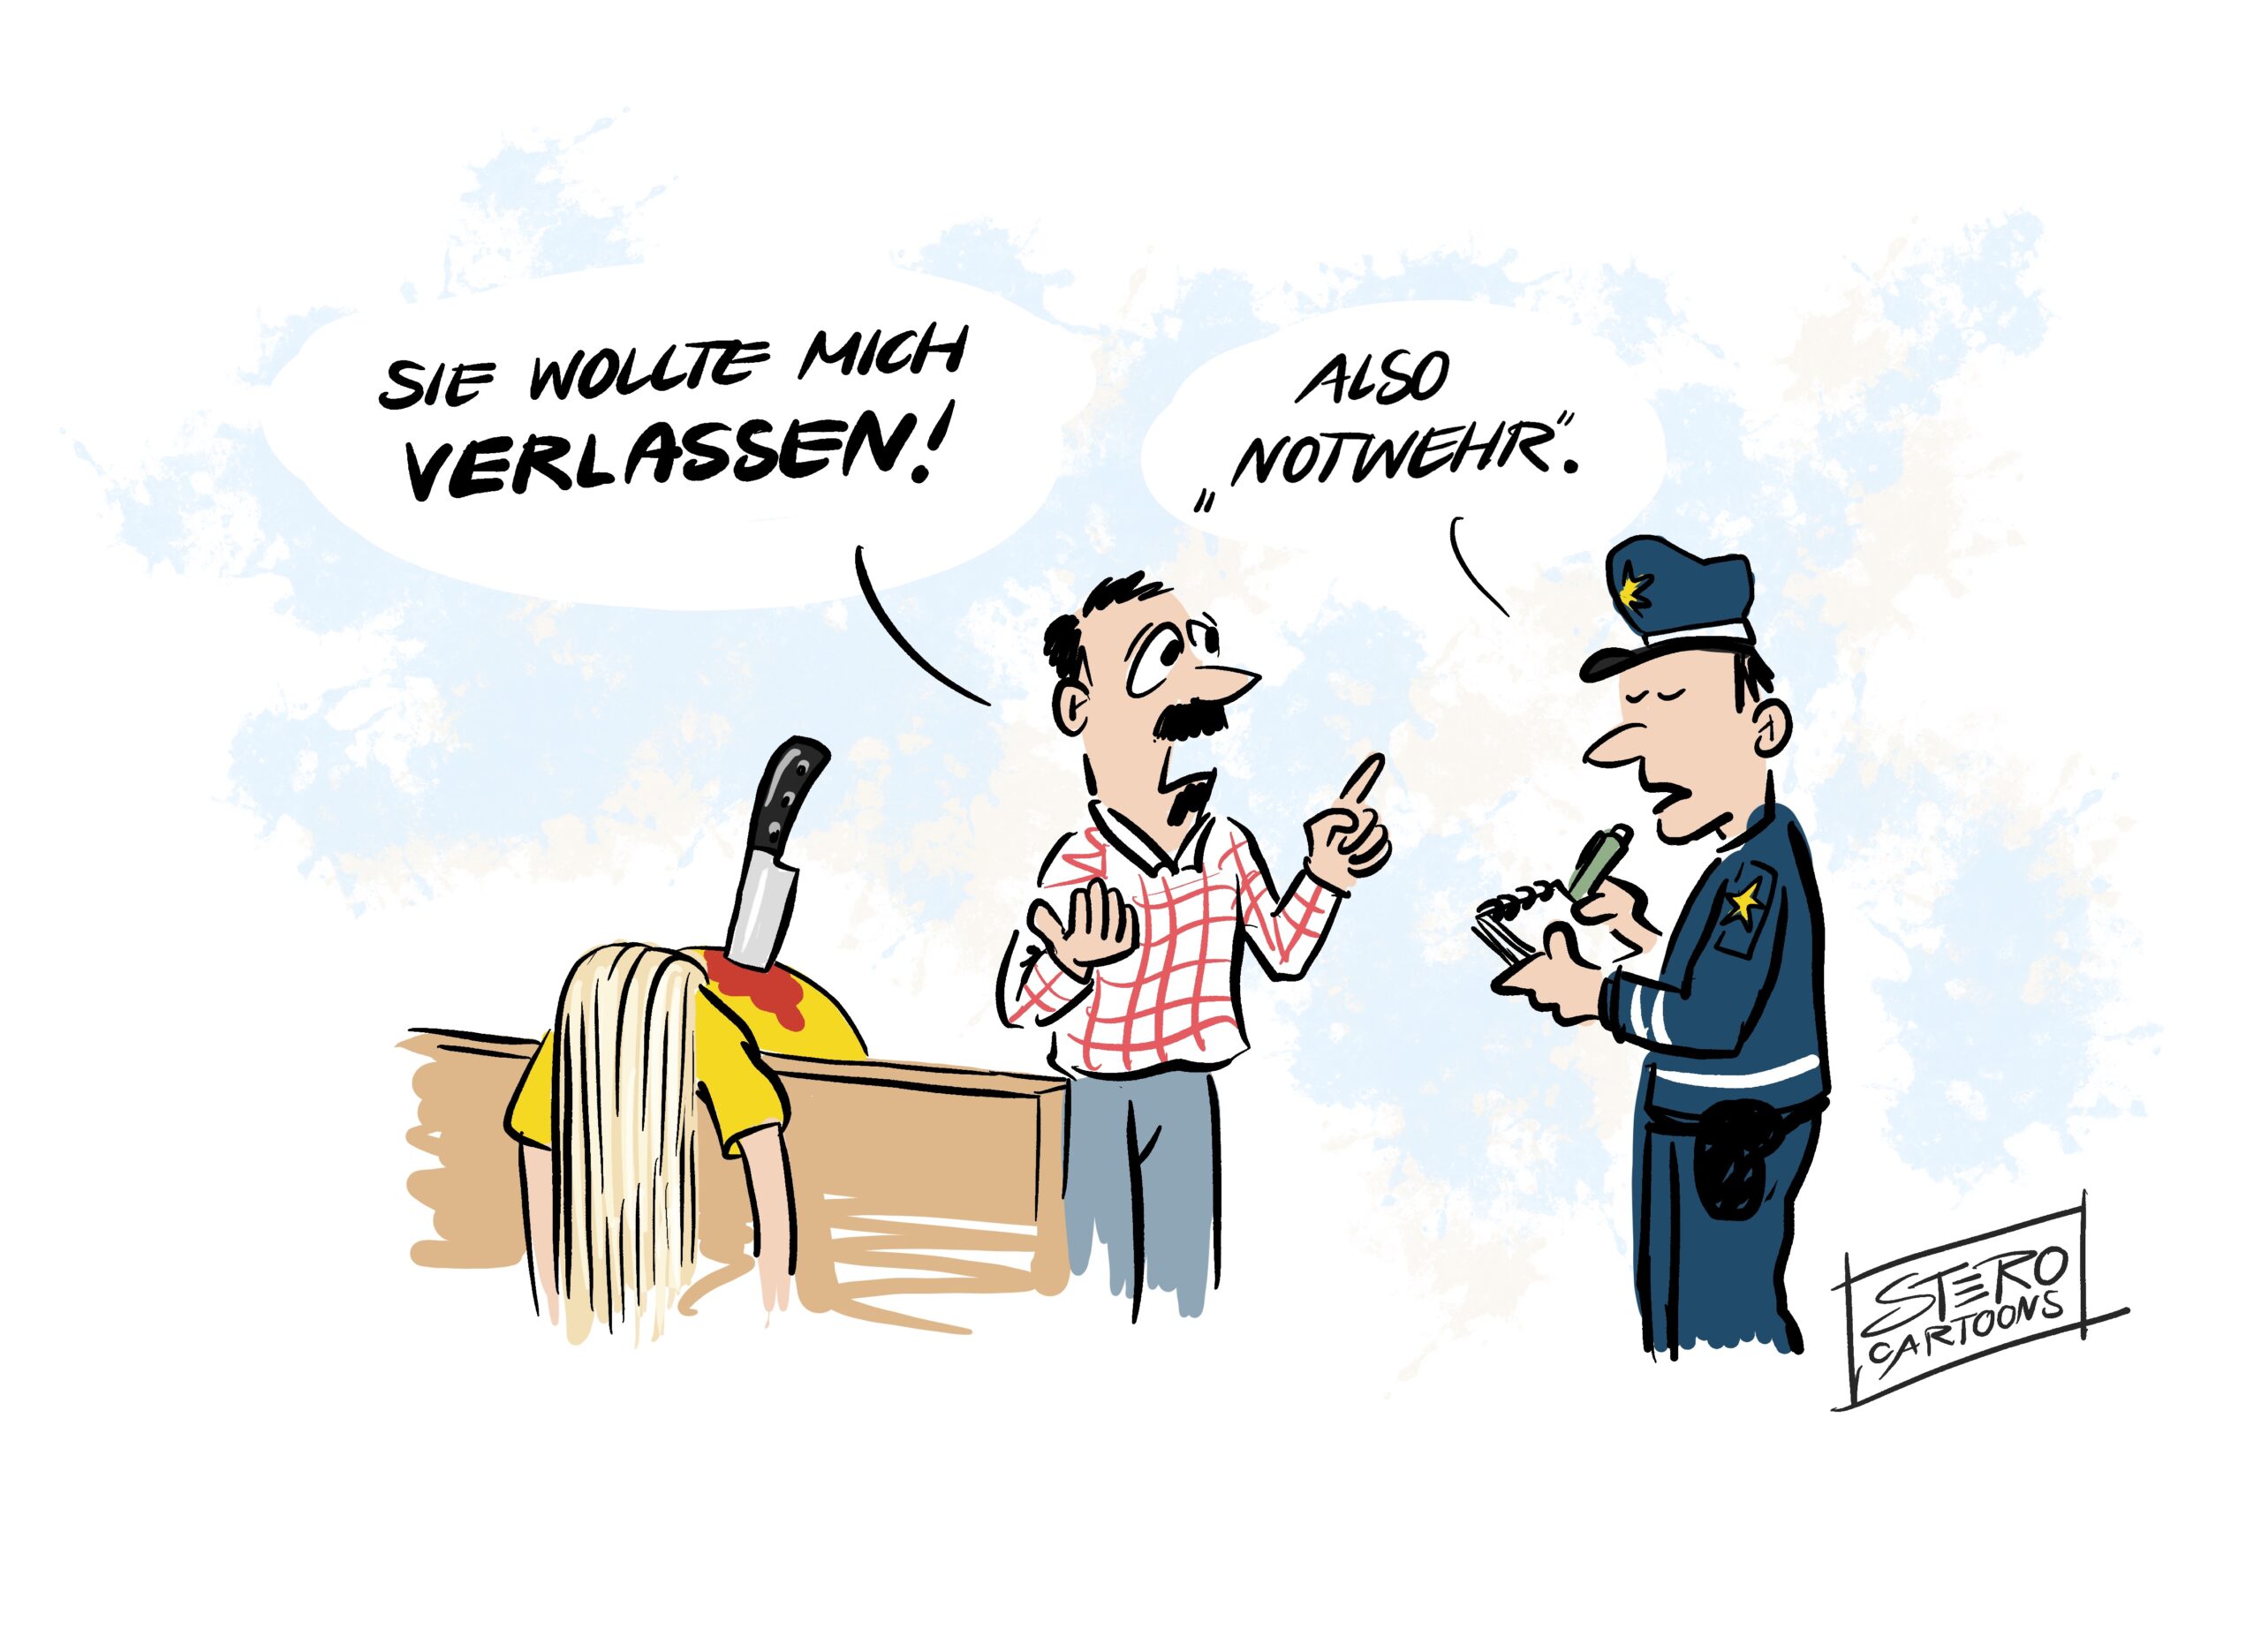 Cartoon-Karikatur-Comic: Femizid ein Mann hat eine Frau umgebracht. Als die Polzeit kommt und ihn verhaften will, rechtfertigt er sich mit "Sie wollte mich verlassen" Der Polizist meint lapidar: Also Notwehr"